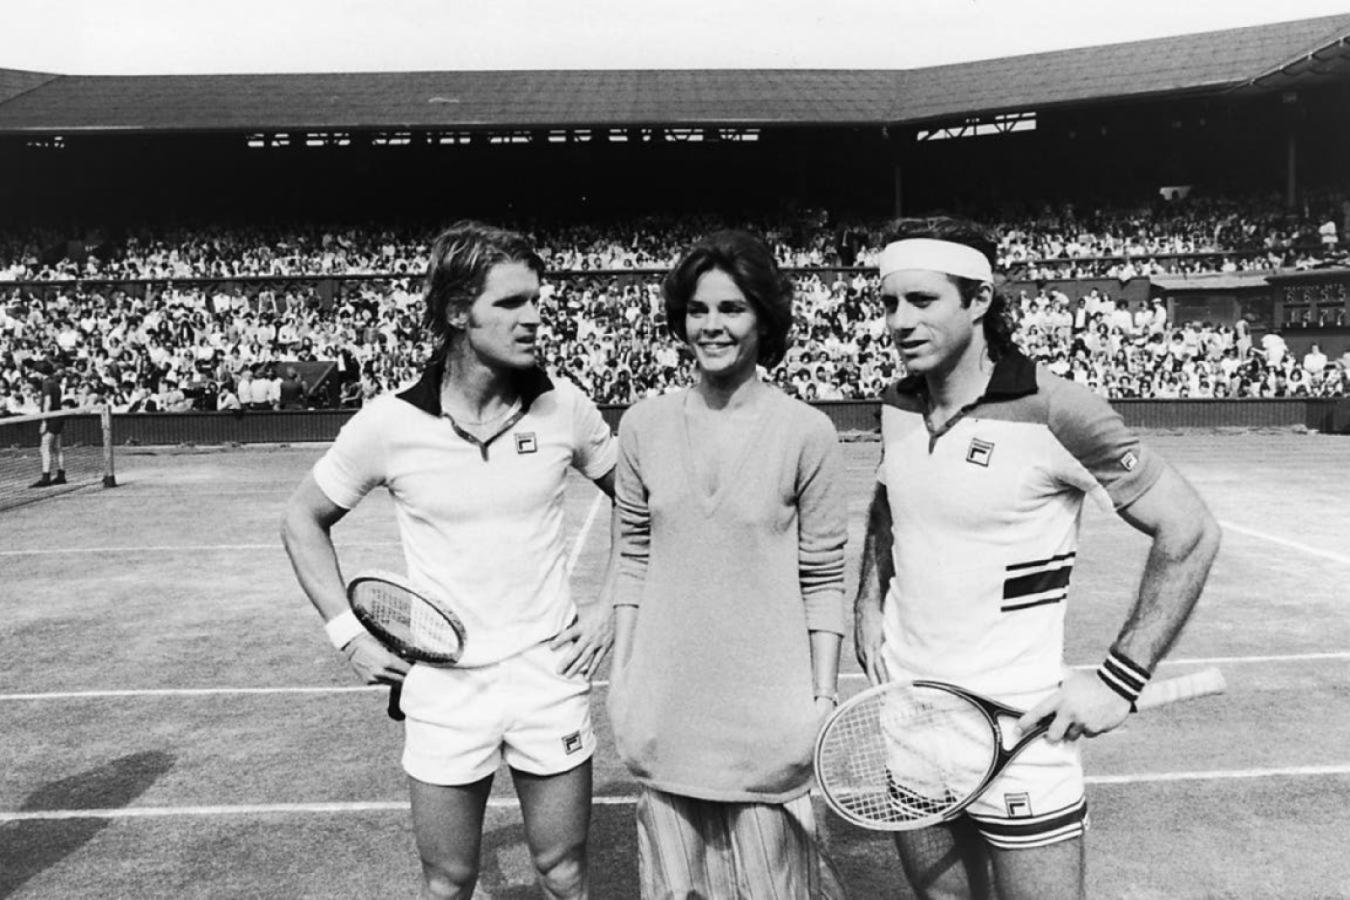 Imagen Chris Christensen (Dean Paul Martin), Nicole Boucher (Ali MacGraw) y Vilas, en la central de Wimbledon.